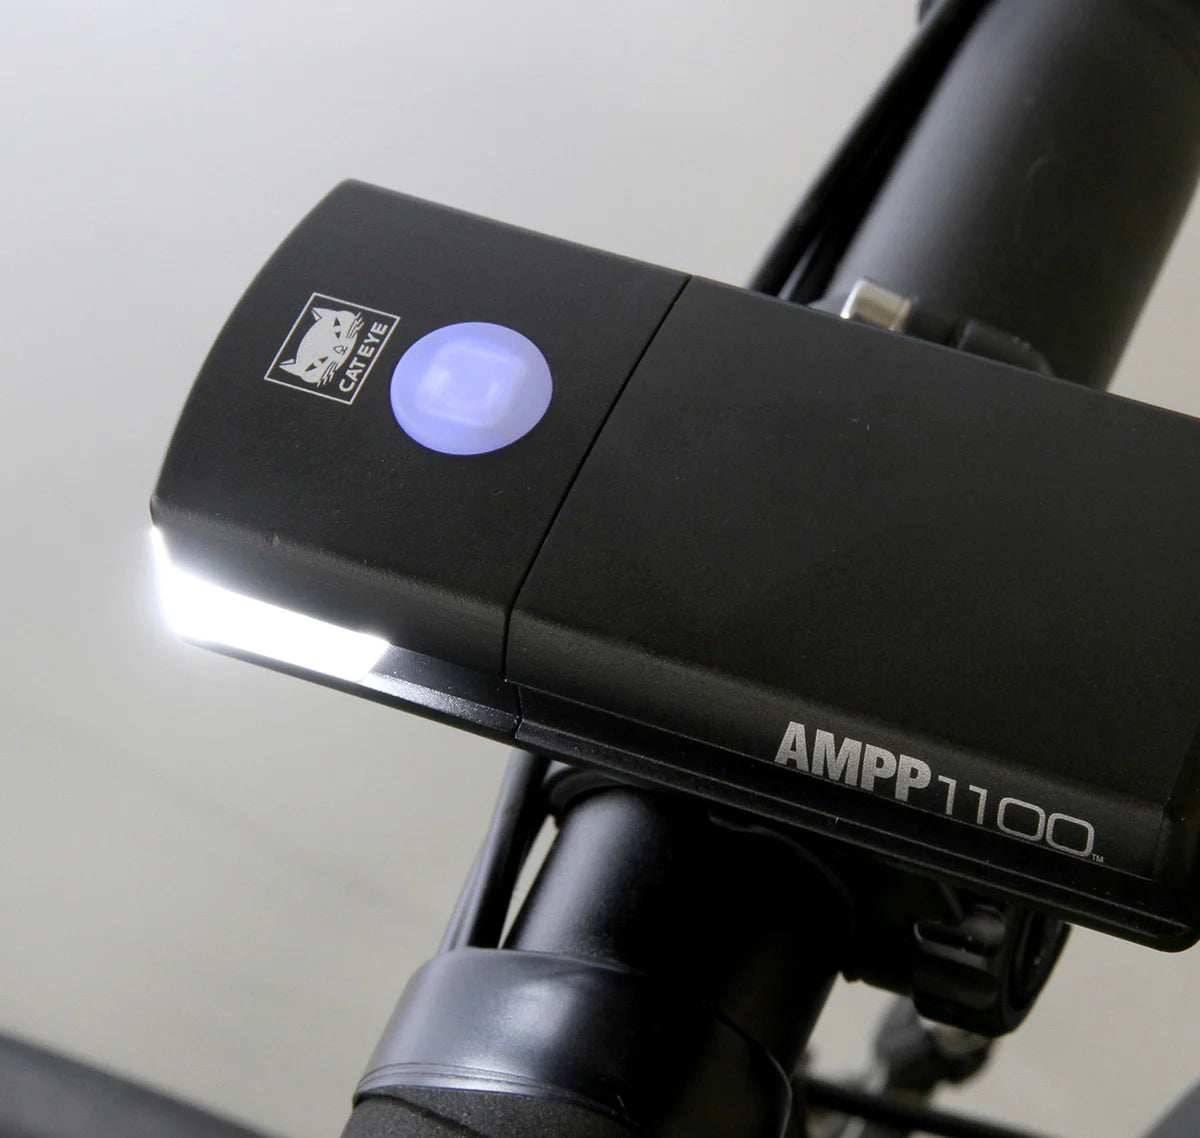 AMPP 1100 FRONT LIGHT